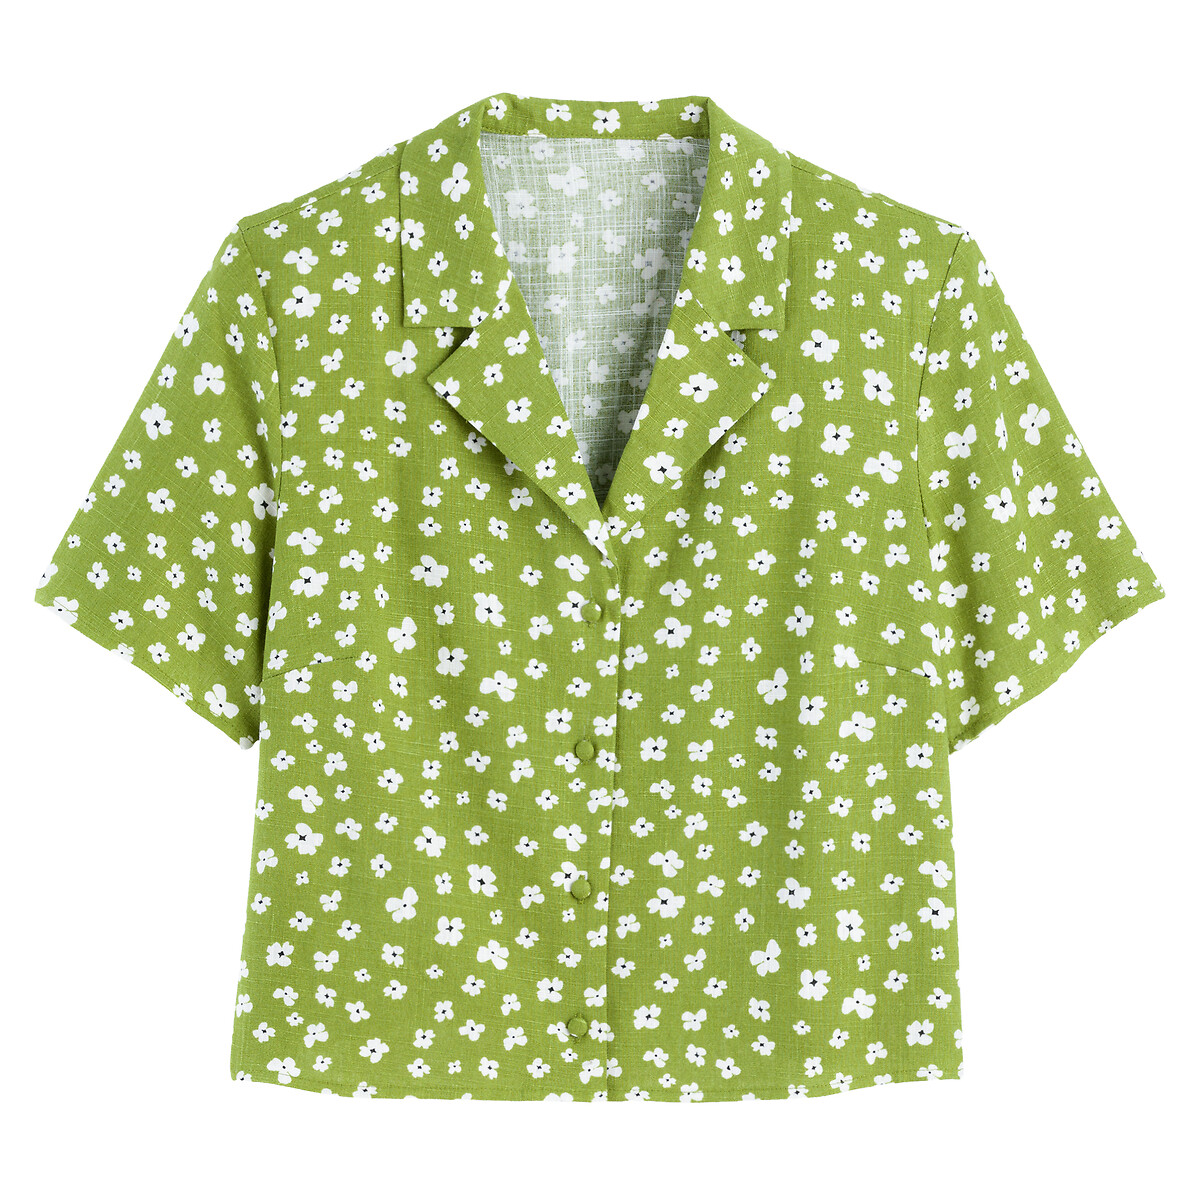 Блузка С цветочным принтом и короткими рукавами 36 (FR) - 42 (RUS) зеленый LaRedoute, размер 36 (FR) - 42 (RUS) Блузка С цветочным принтом и короткими рукавами 36 (FR) - 42 (RUS) зеленый - фото 5